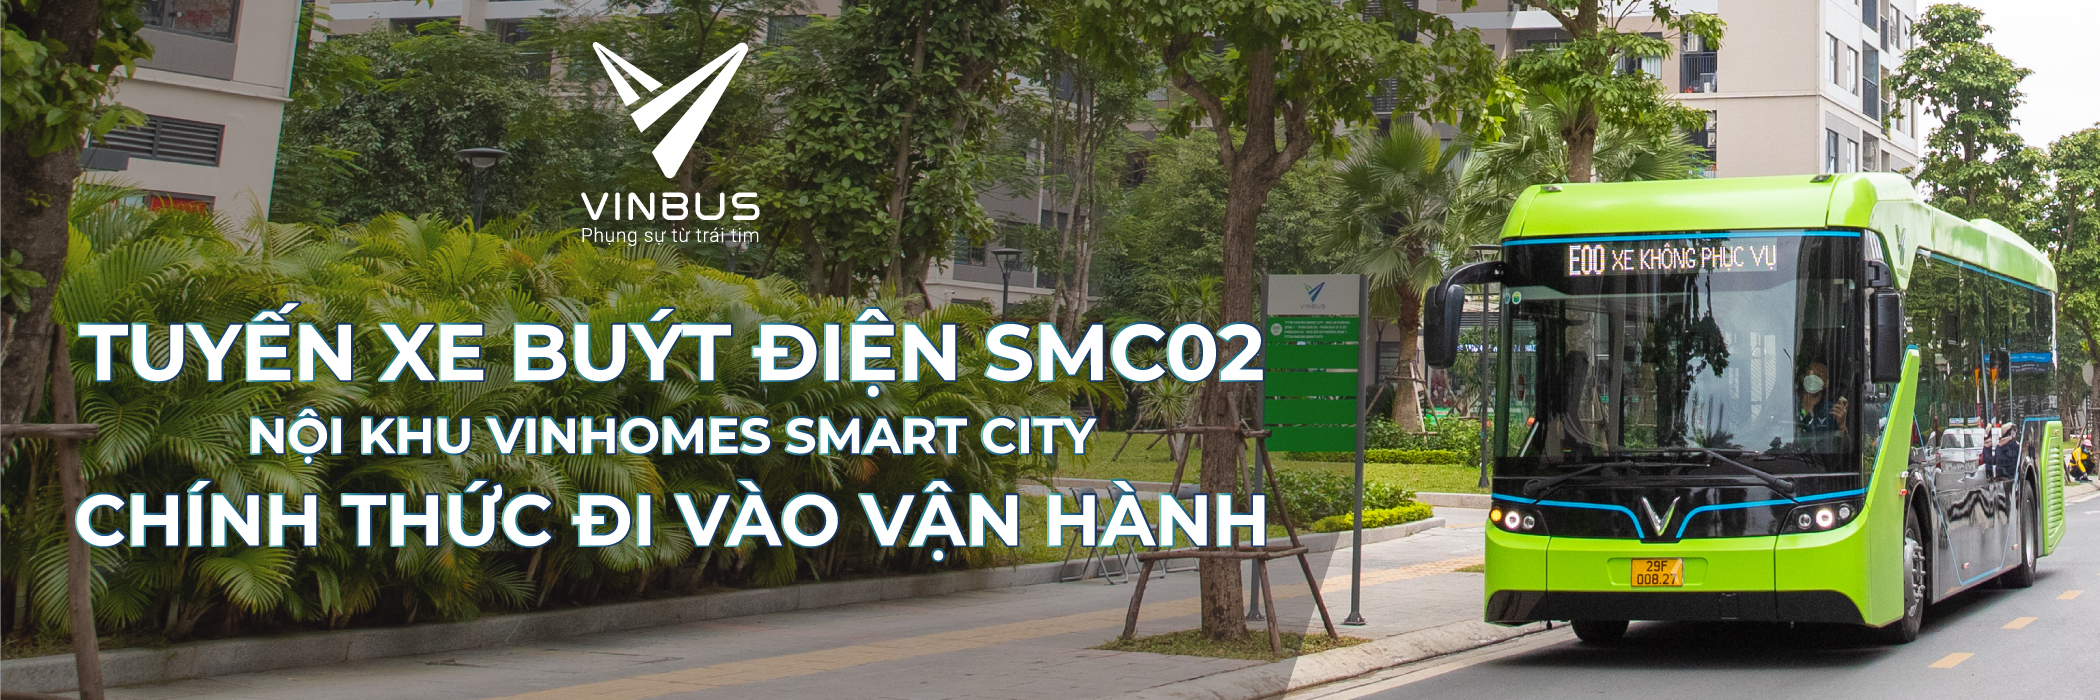 VinBus chính thức vận hành tuyến xe buýt điện SMC02 tại KĐT Smart City